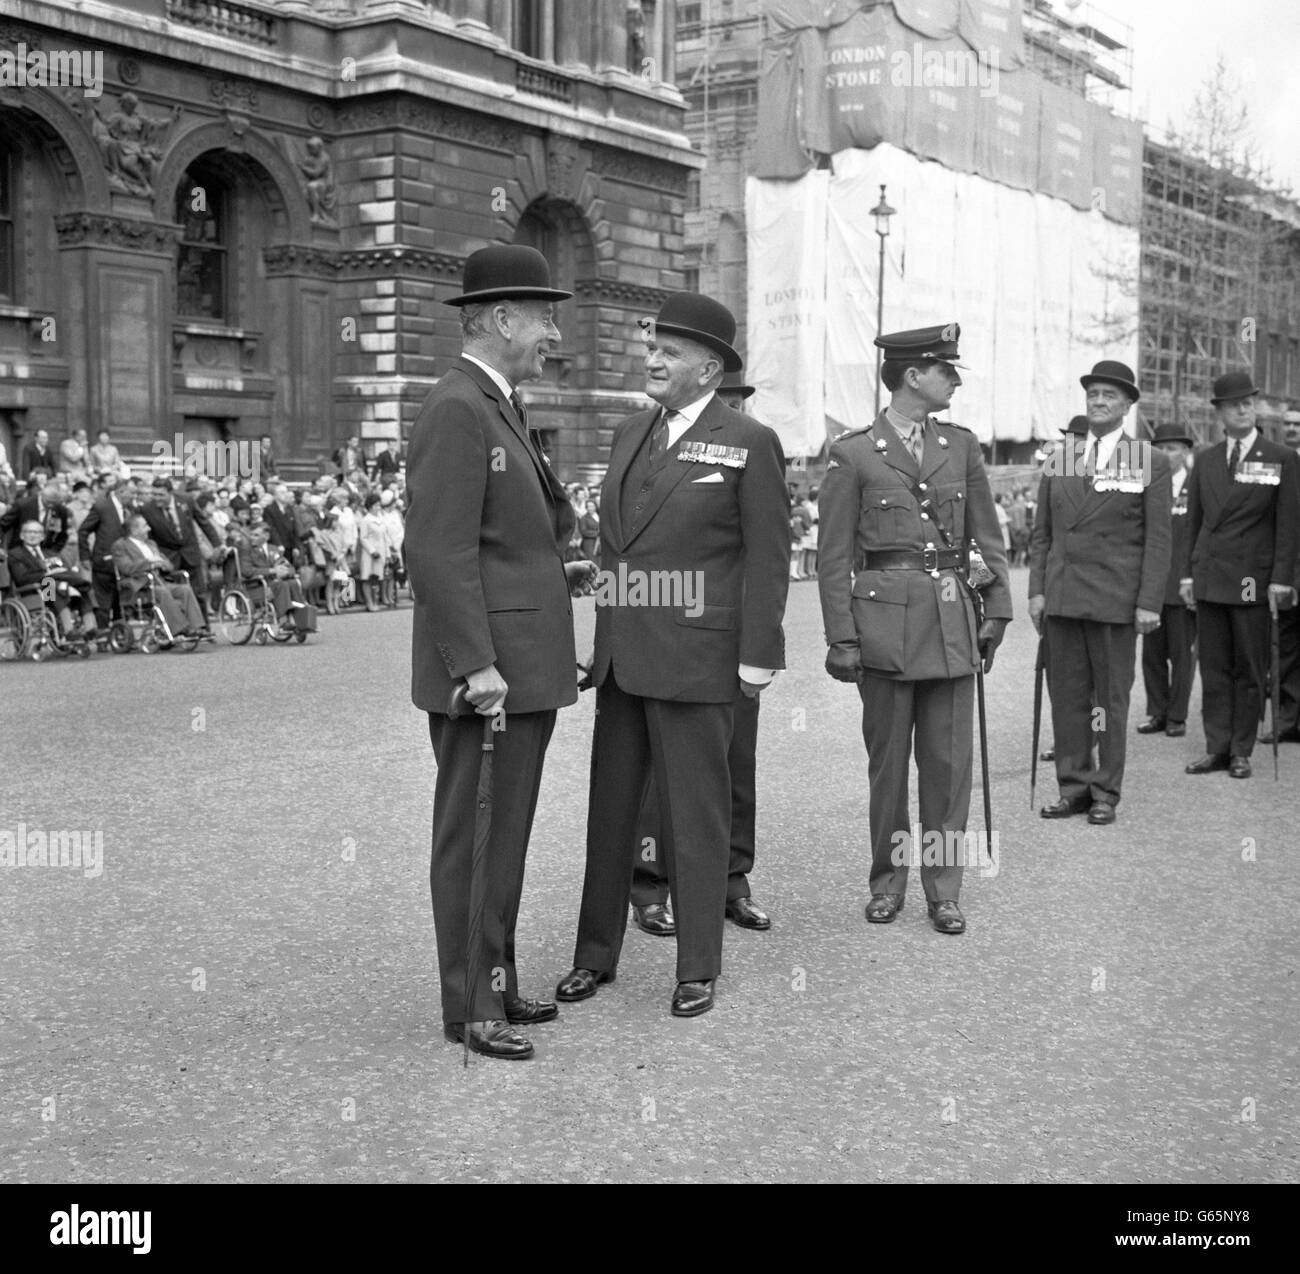 Zwei Kommandeure aus Südostasien treffen sich im Cenotaph in Whitehall, London, zur jährlichen Remembrance Parade der Burma Star Association. Der Admiral der Flotte Earl Mountbatten aus Burma ist auf der linken Seite, rechts der Feldmarschall Lord Slim, der die 14. Armee in Burma kommandierte. Stockfoto